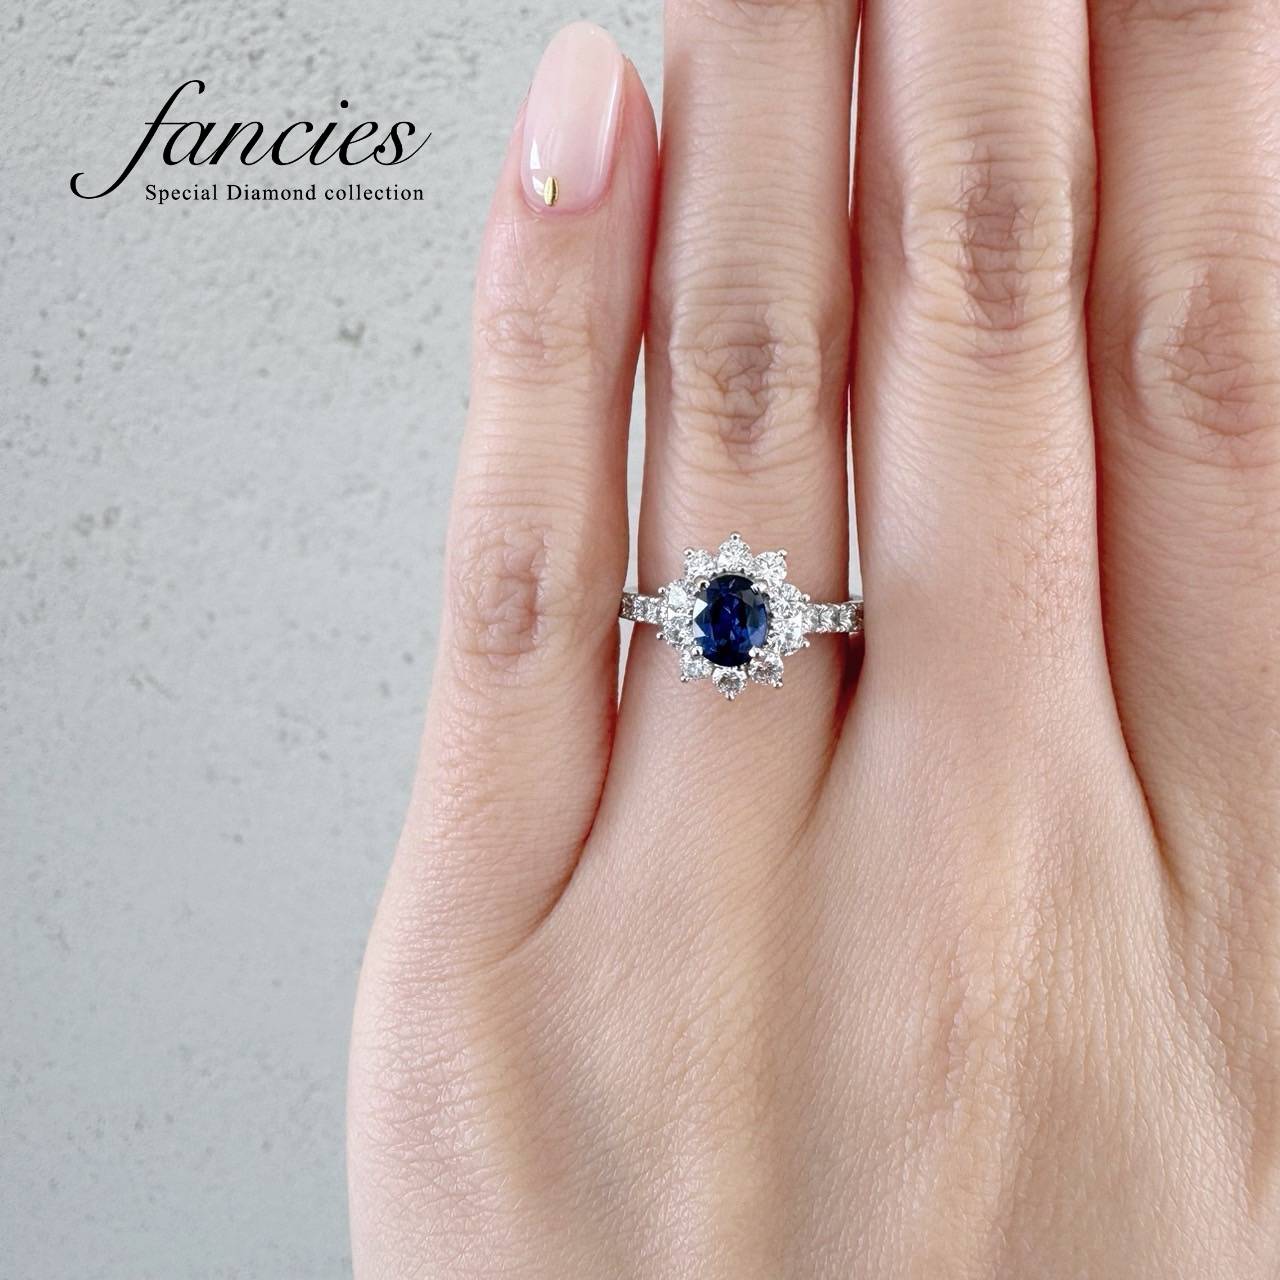 婚約指輪に人気の美しいブルーサファイアを使用したダイヤモンドヘイローリング